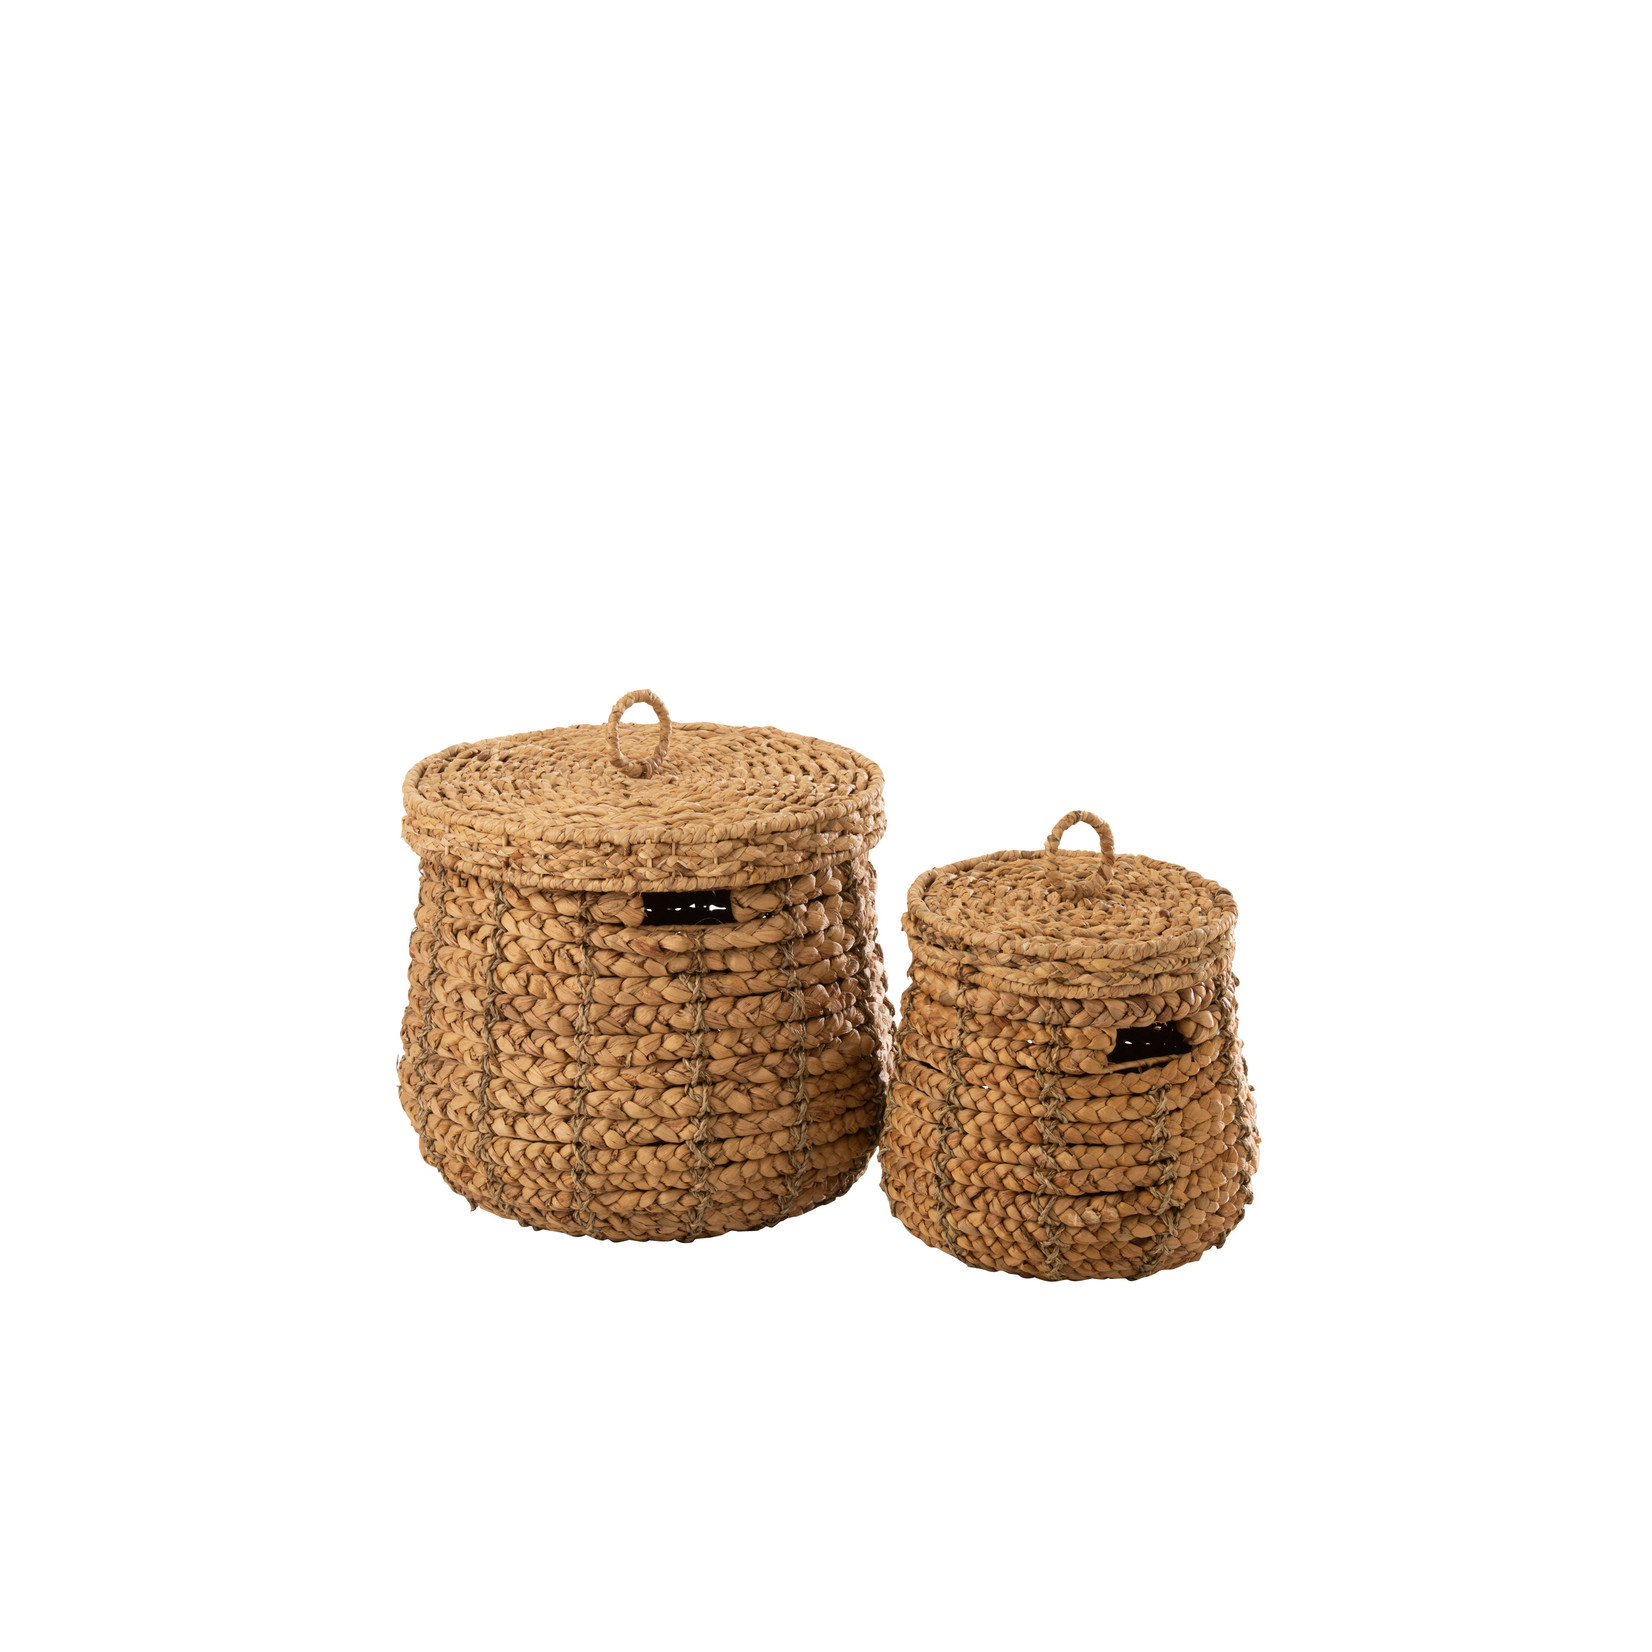 J-Line Baskets Round Lid Cane Natural